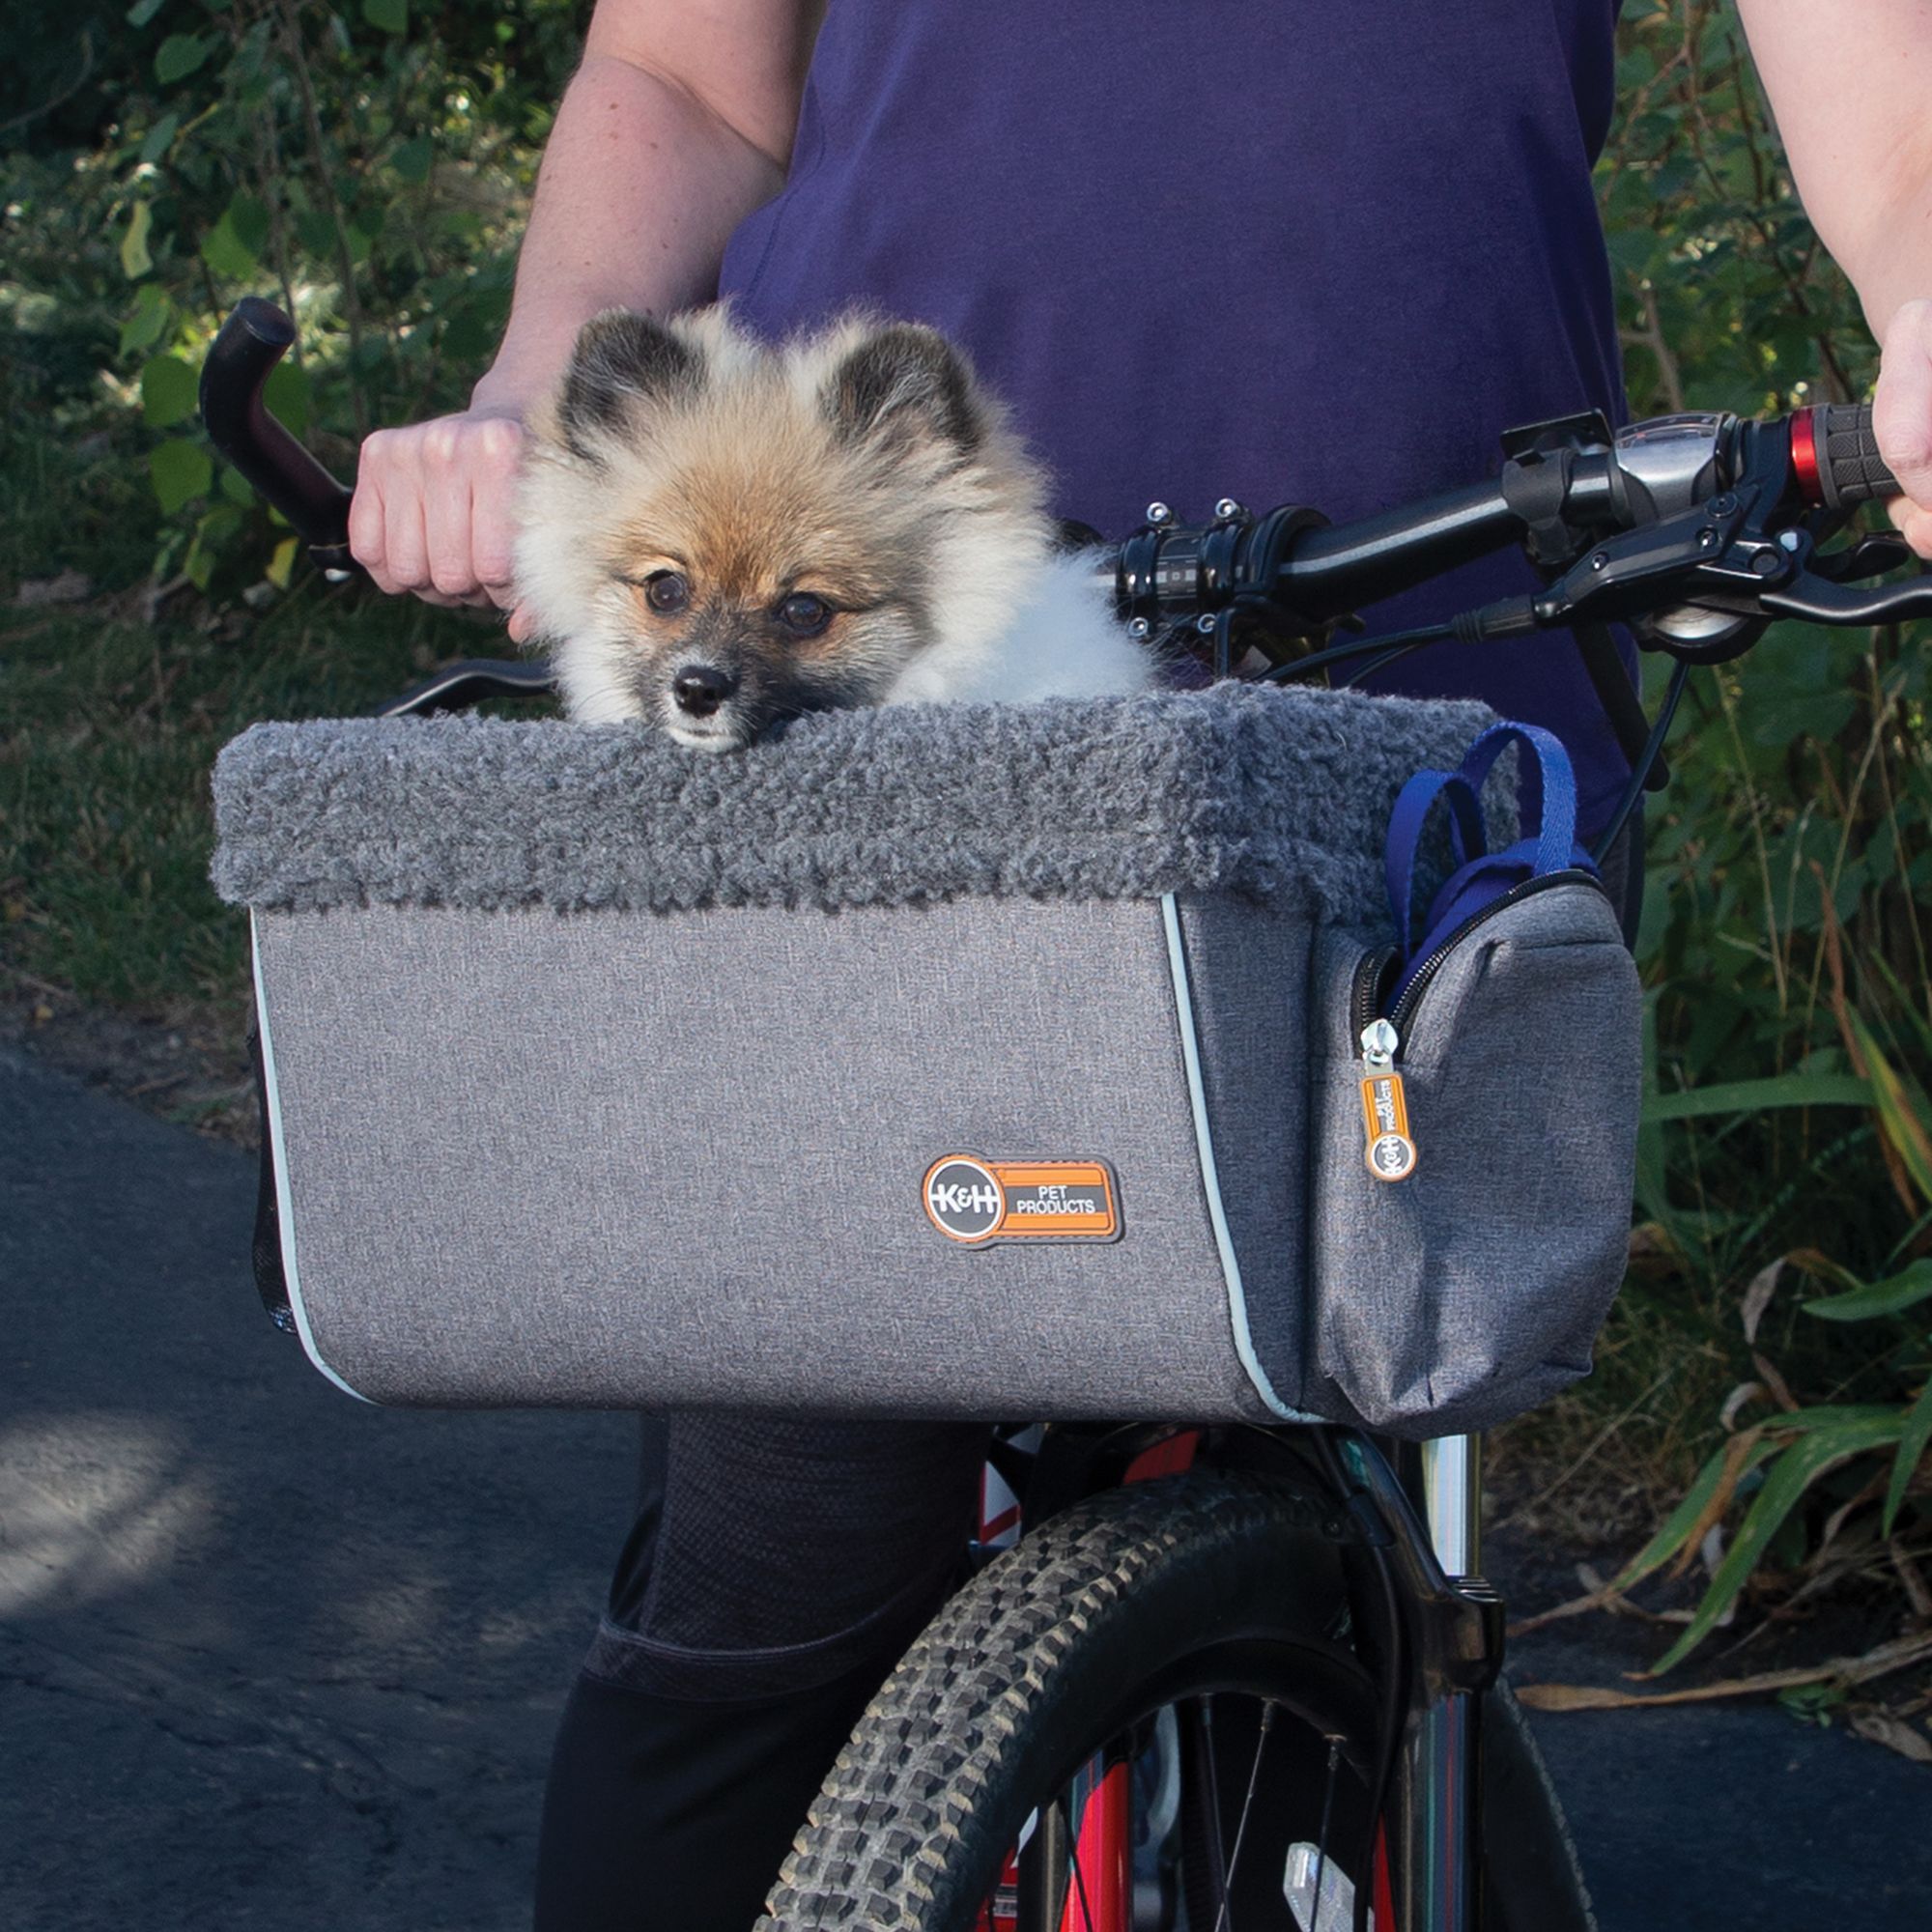 petsmart dog baskets for bikes